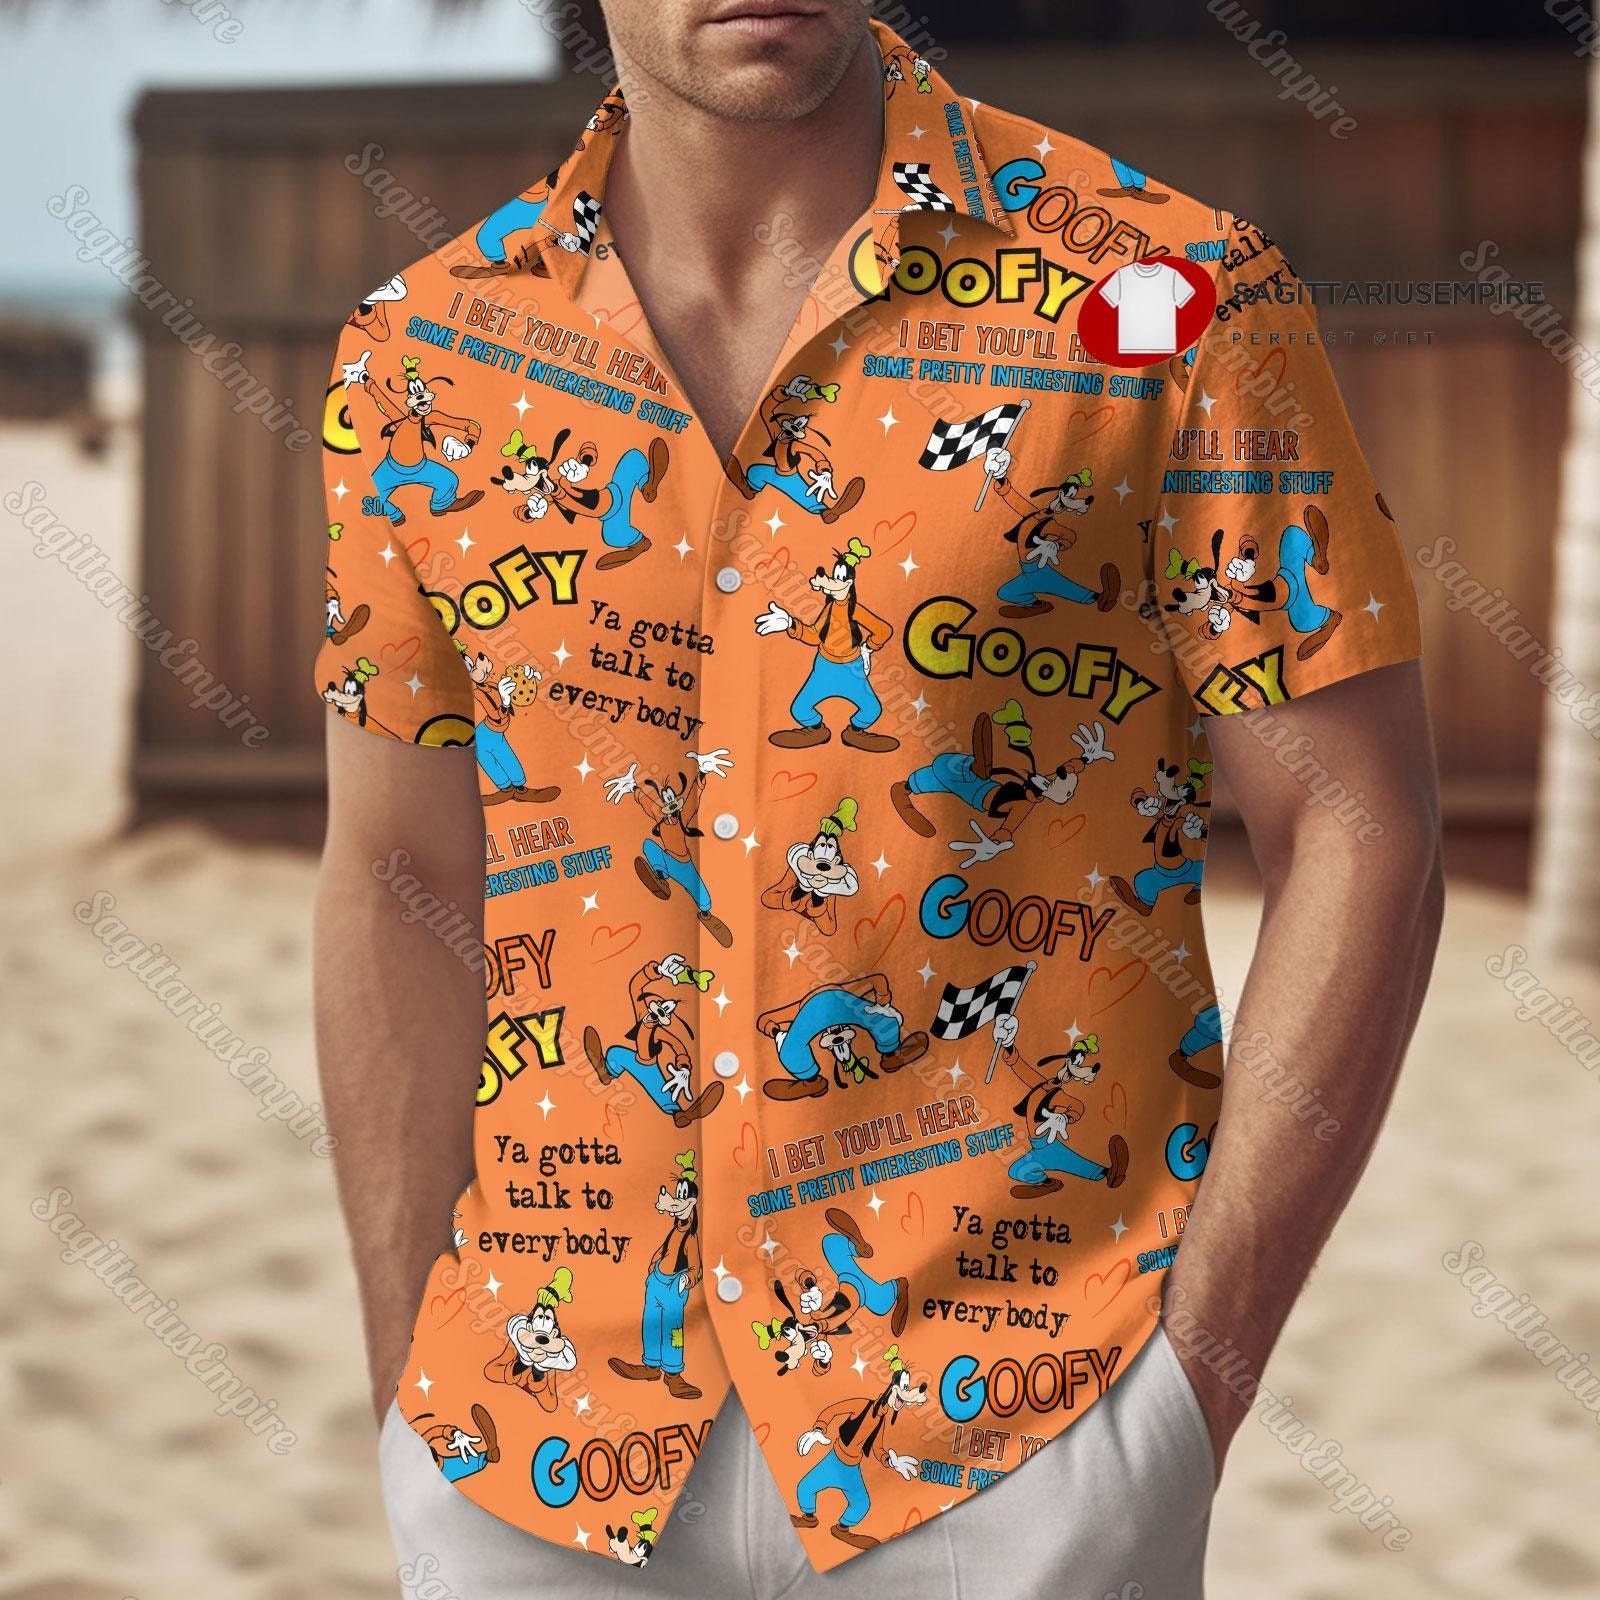 Disney Goofy Button Shirt And Shorts, Goofy Shirt, Goofy Summer Shirt